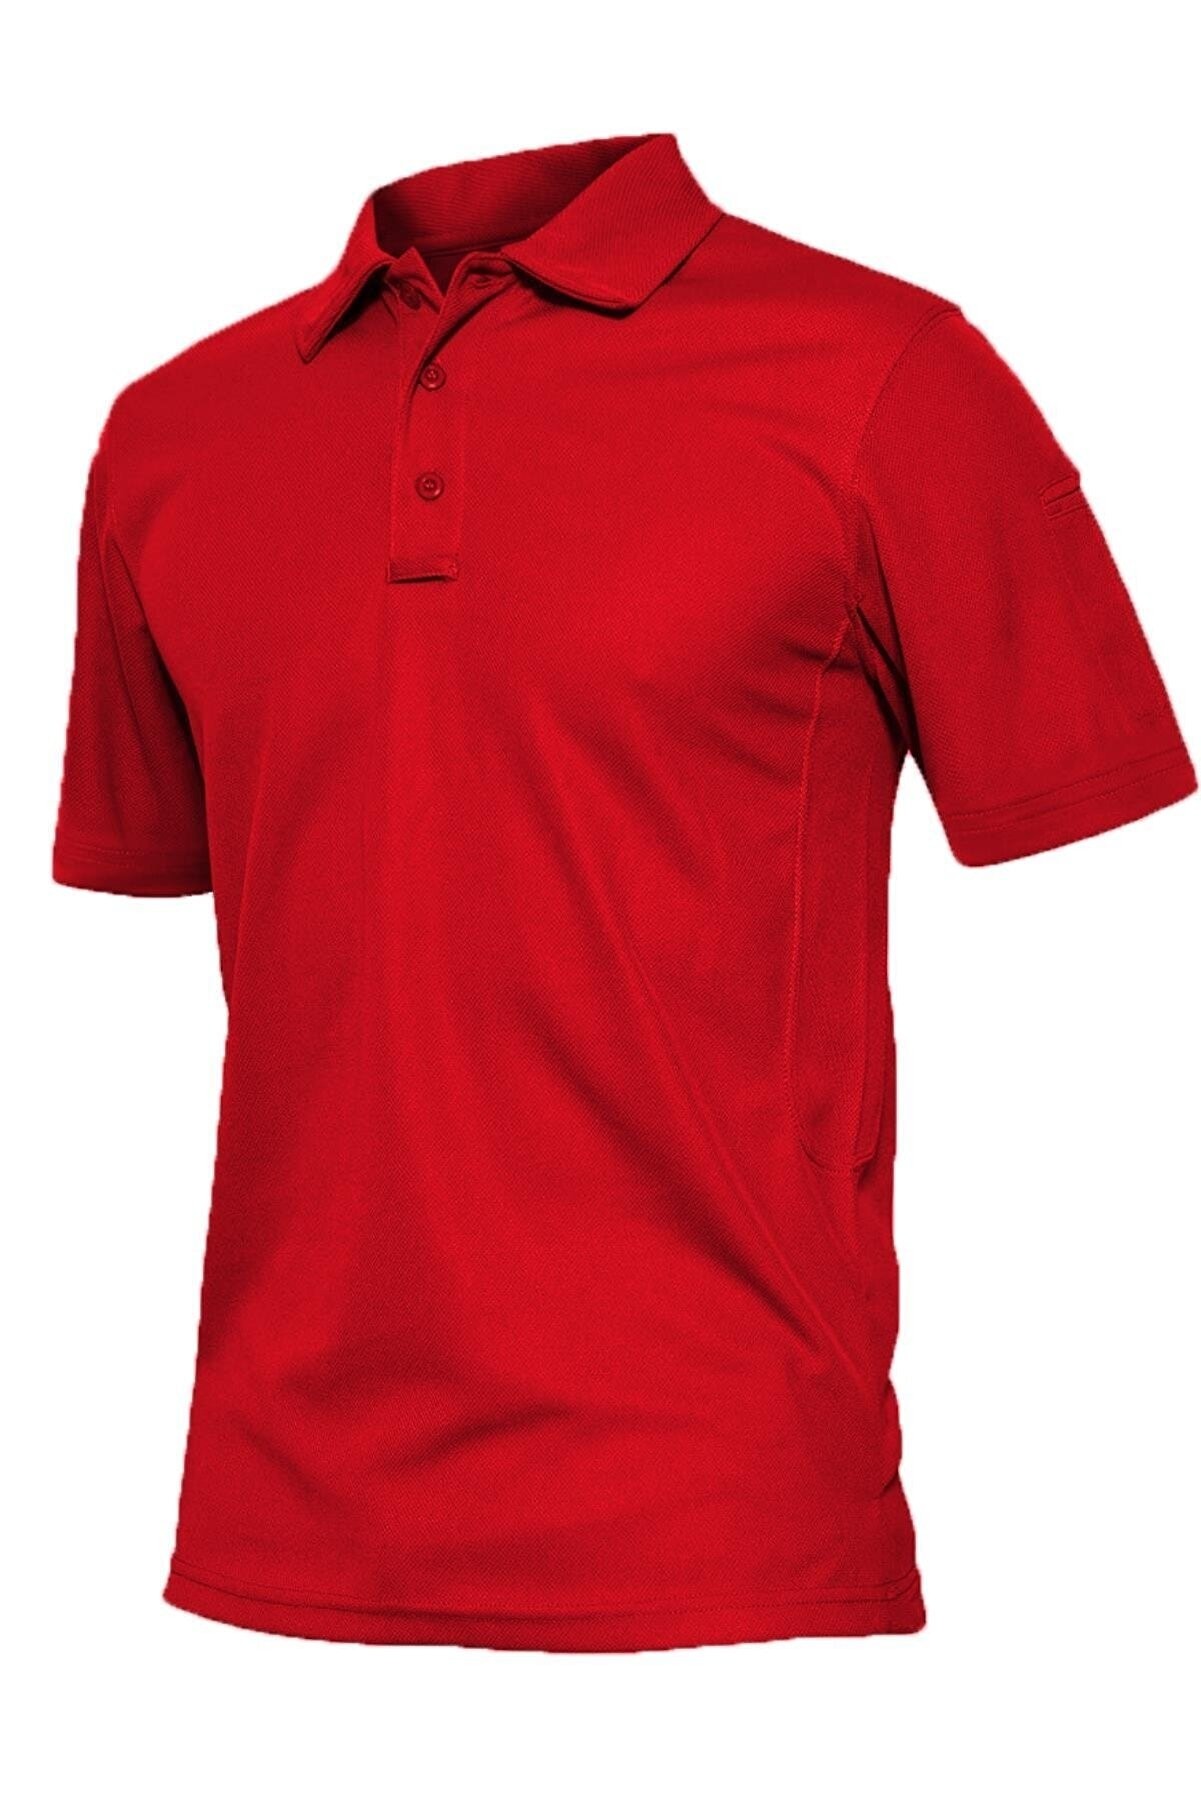 Ghassy Co. Erkek Taktik Polo Yaka Gömlek Hızlı Kuruma Nem Emici Performans Pique Jersey Golf T-shirt - Kırmızı